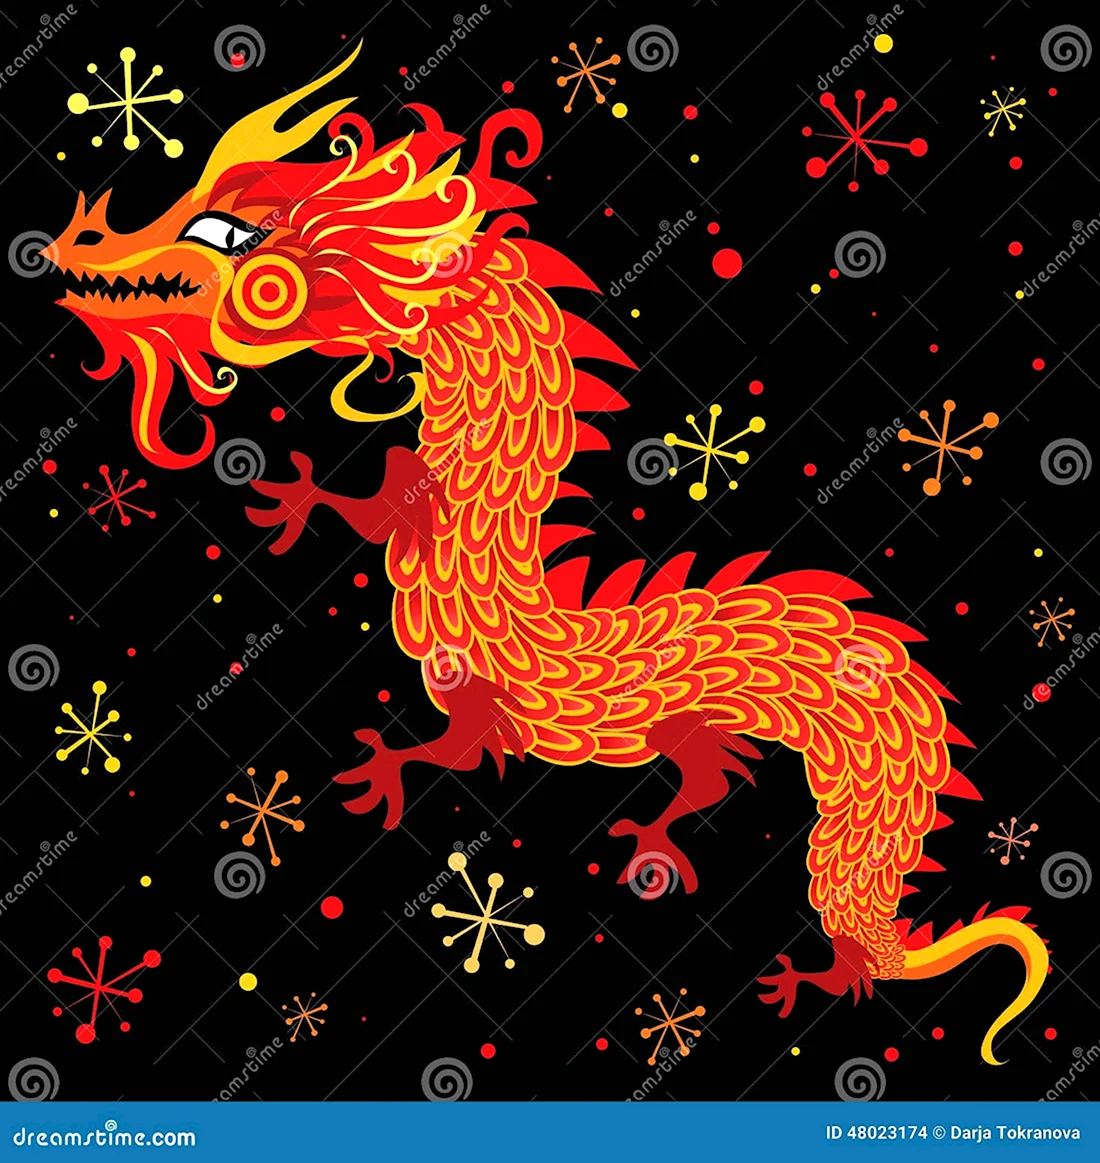 Китайский новый год дракон символ. Открытка на праздник